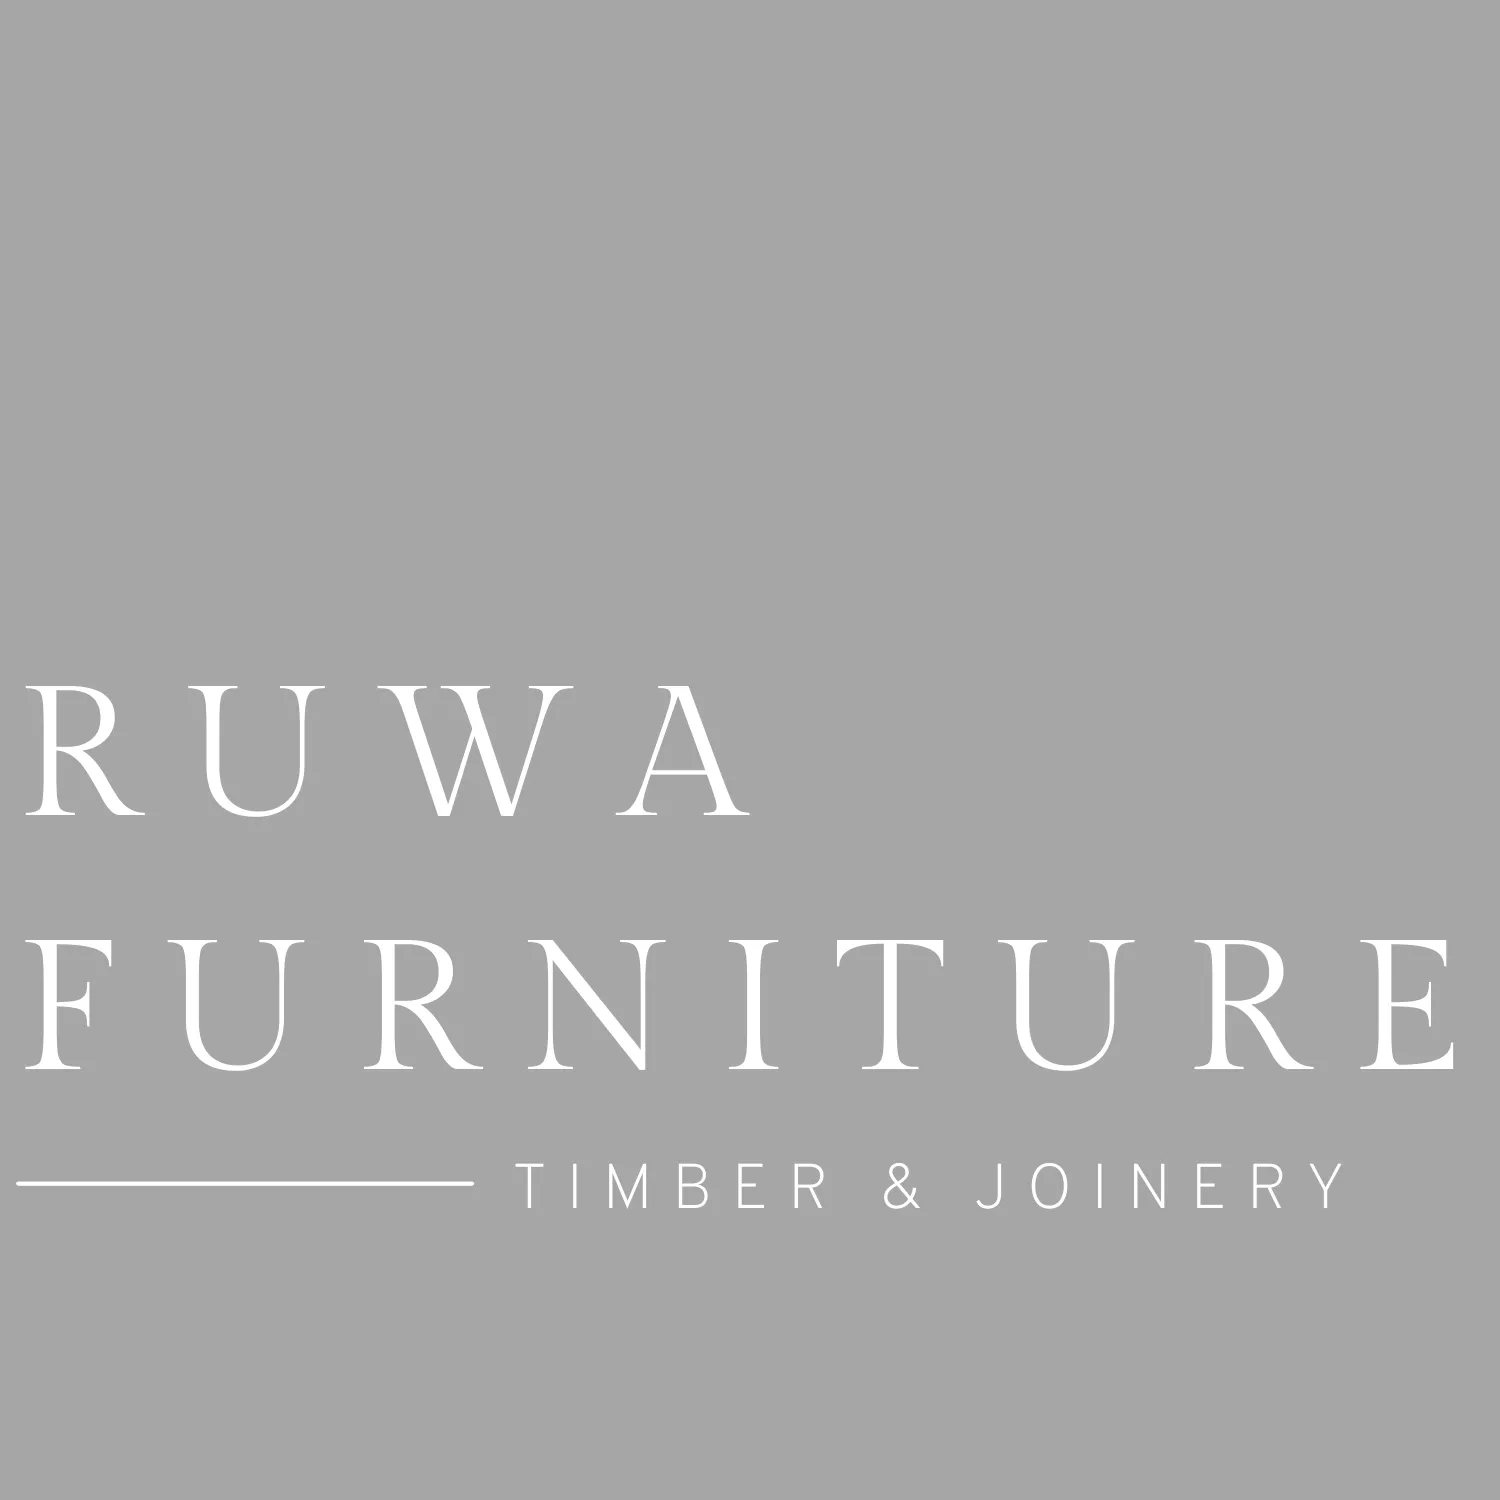 Ruwa Furniture